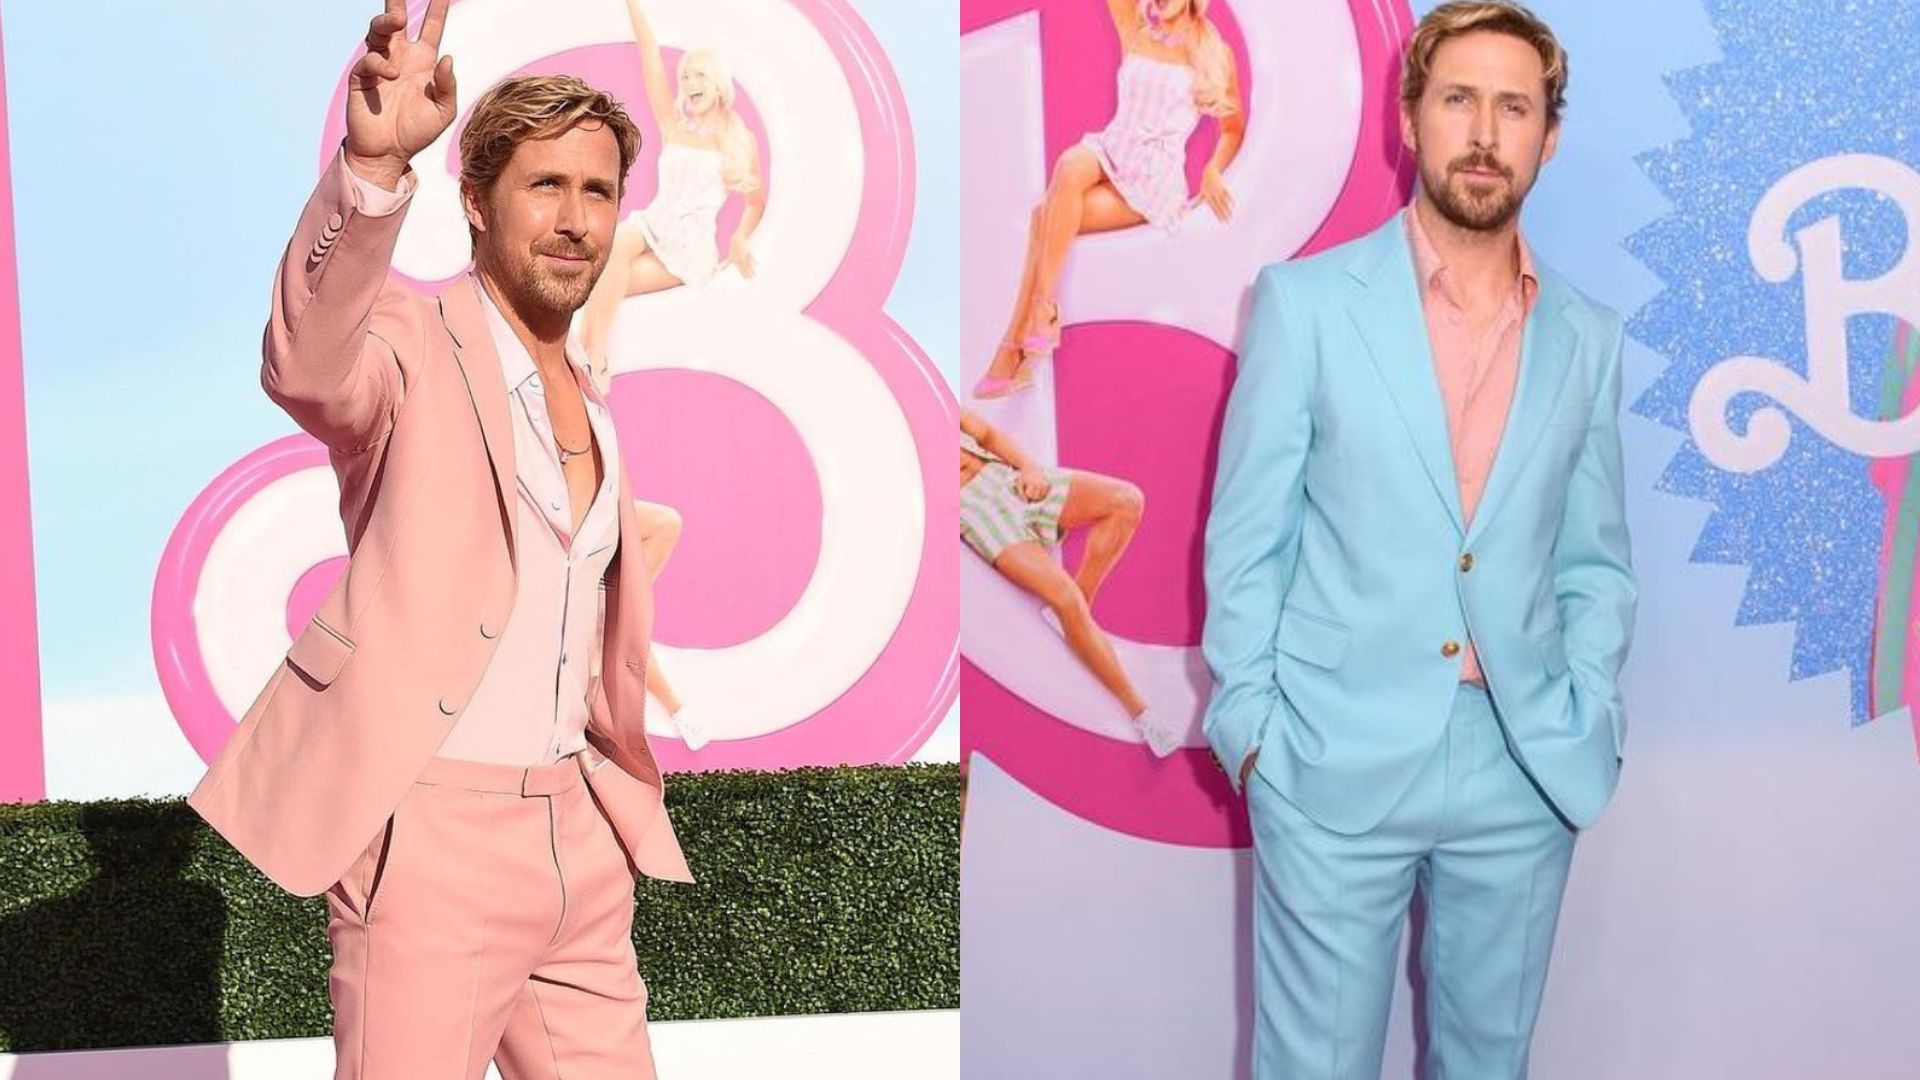 Barbie': Ken Is Ryan Gosling at His Peak Musical Powers